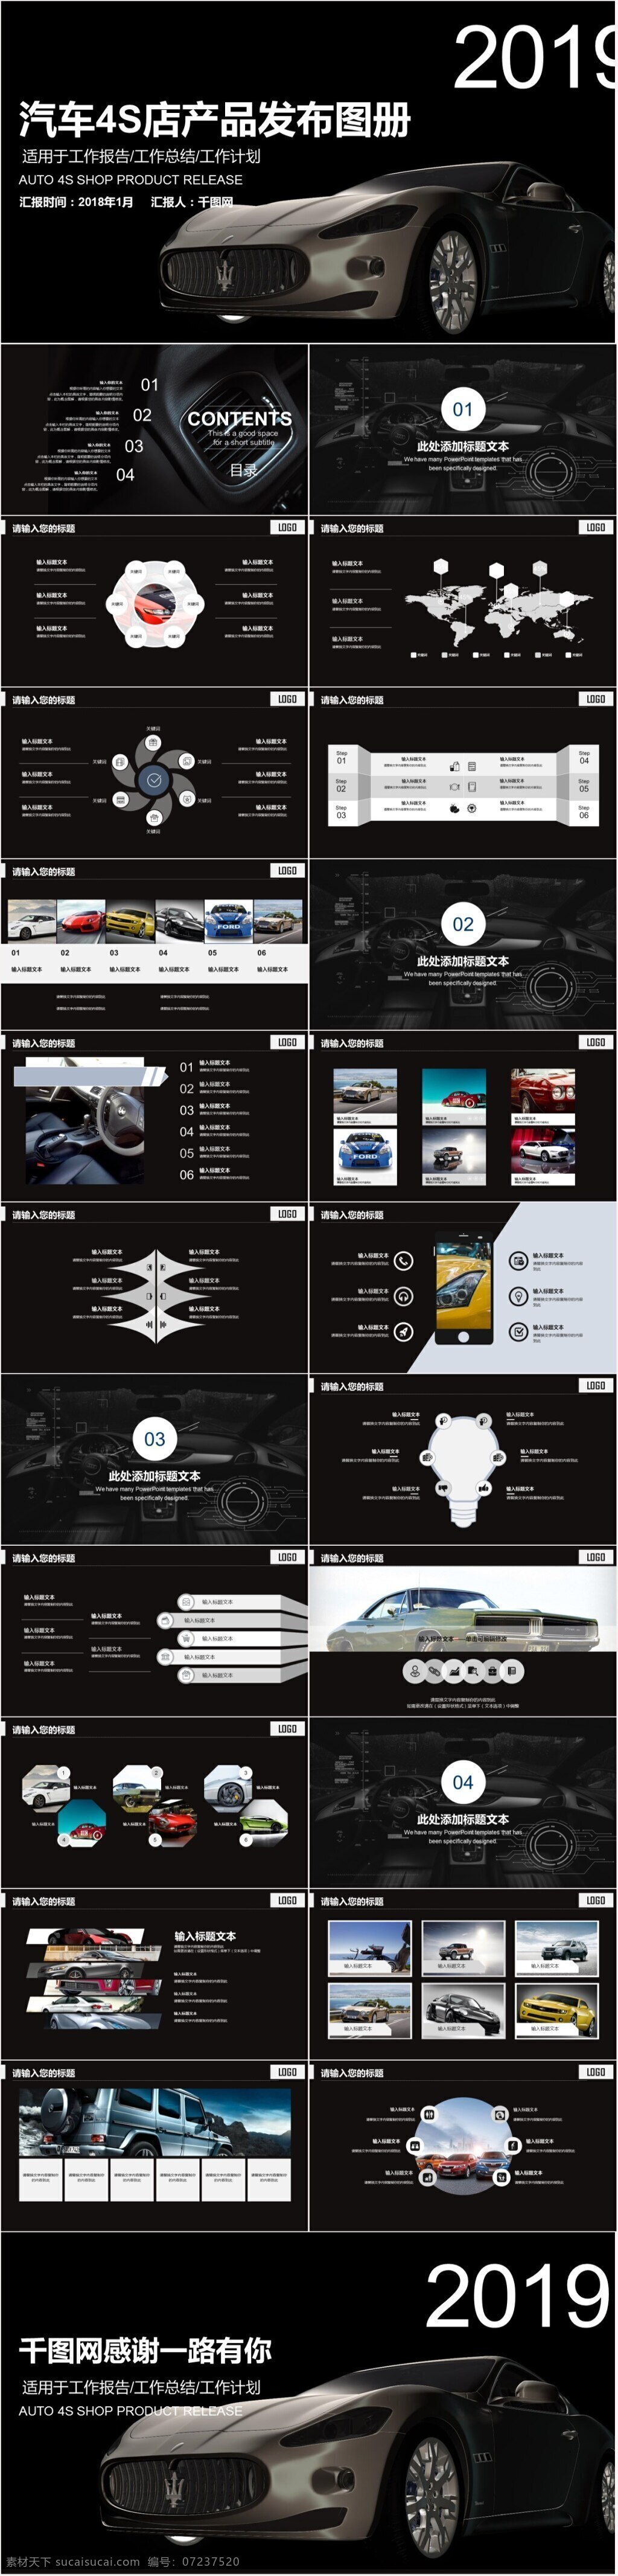 炫 酷 黑色 汽车 品牌 宣传 营销策划 方案 模板 ppt模板 大气 工作汇报 简约 欧美风 商务